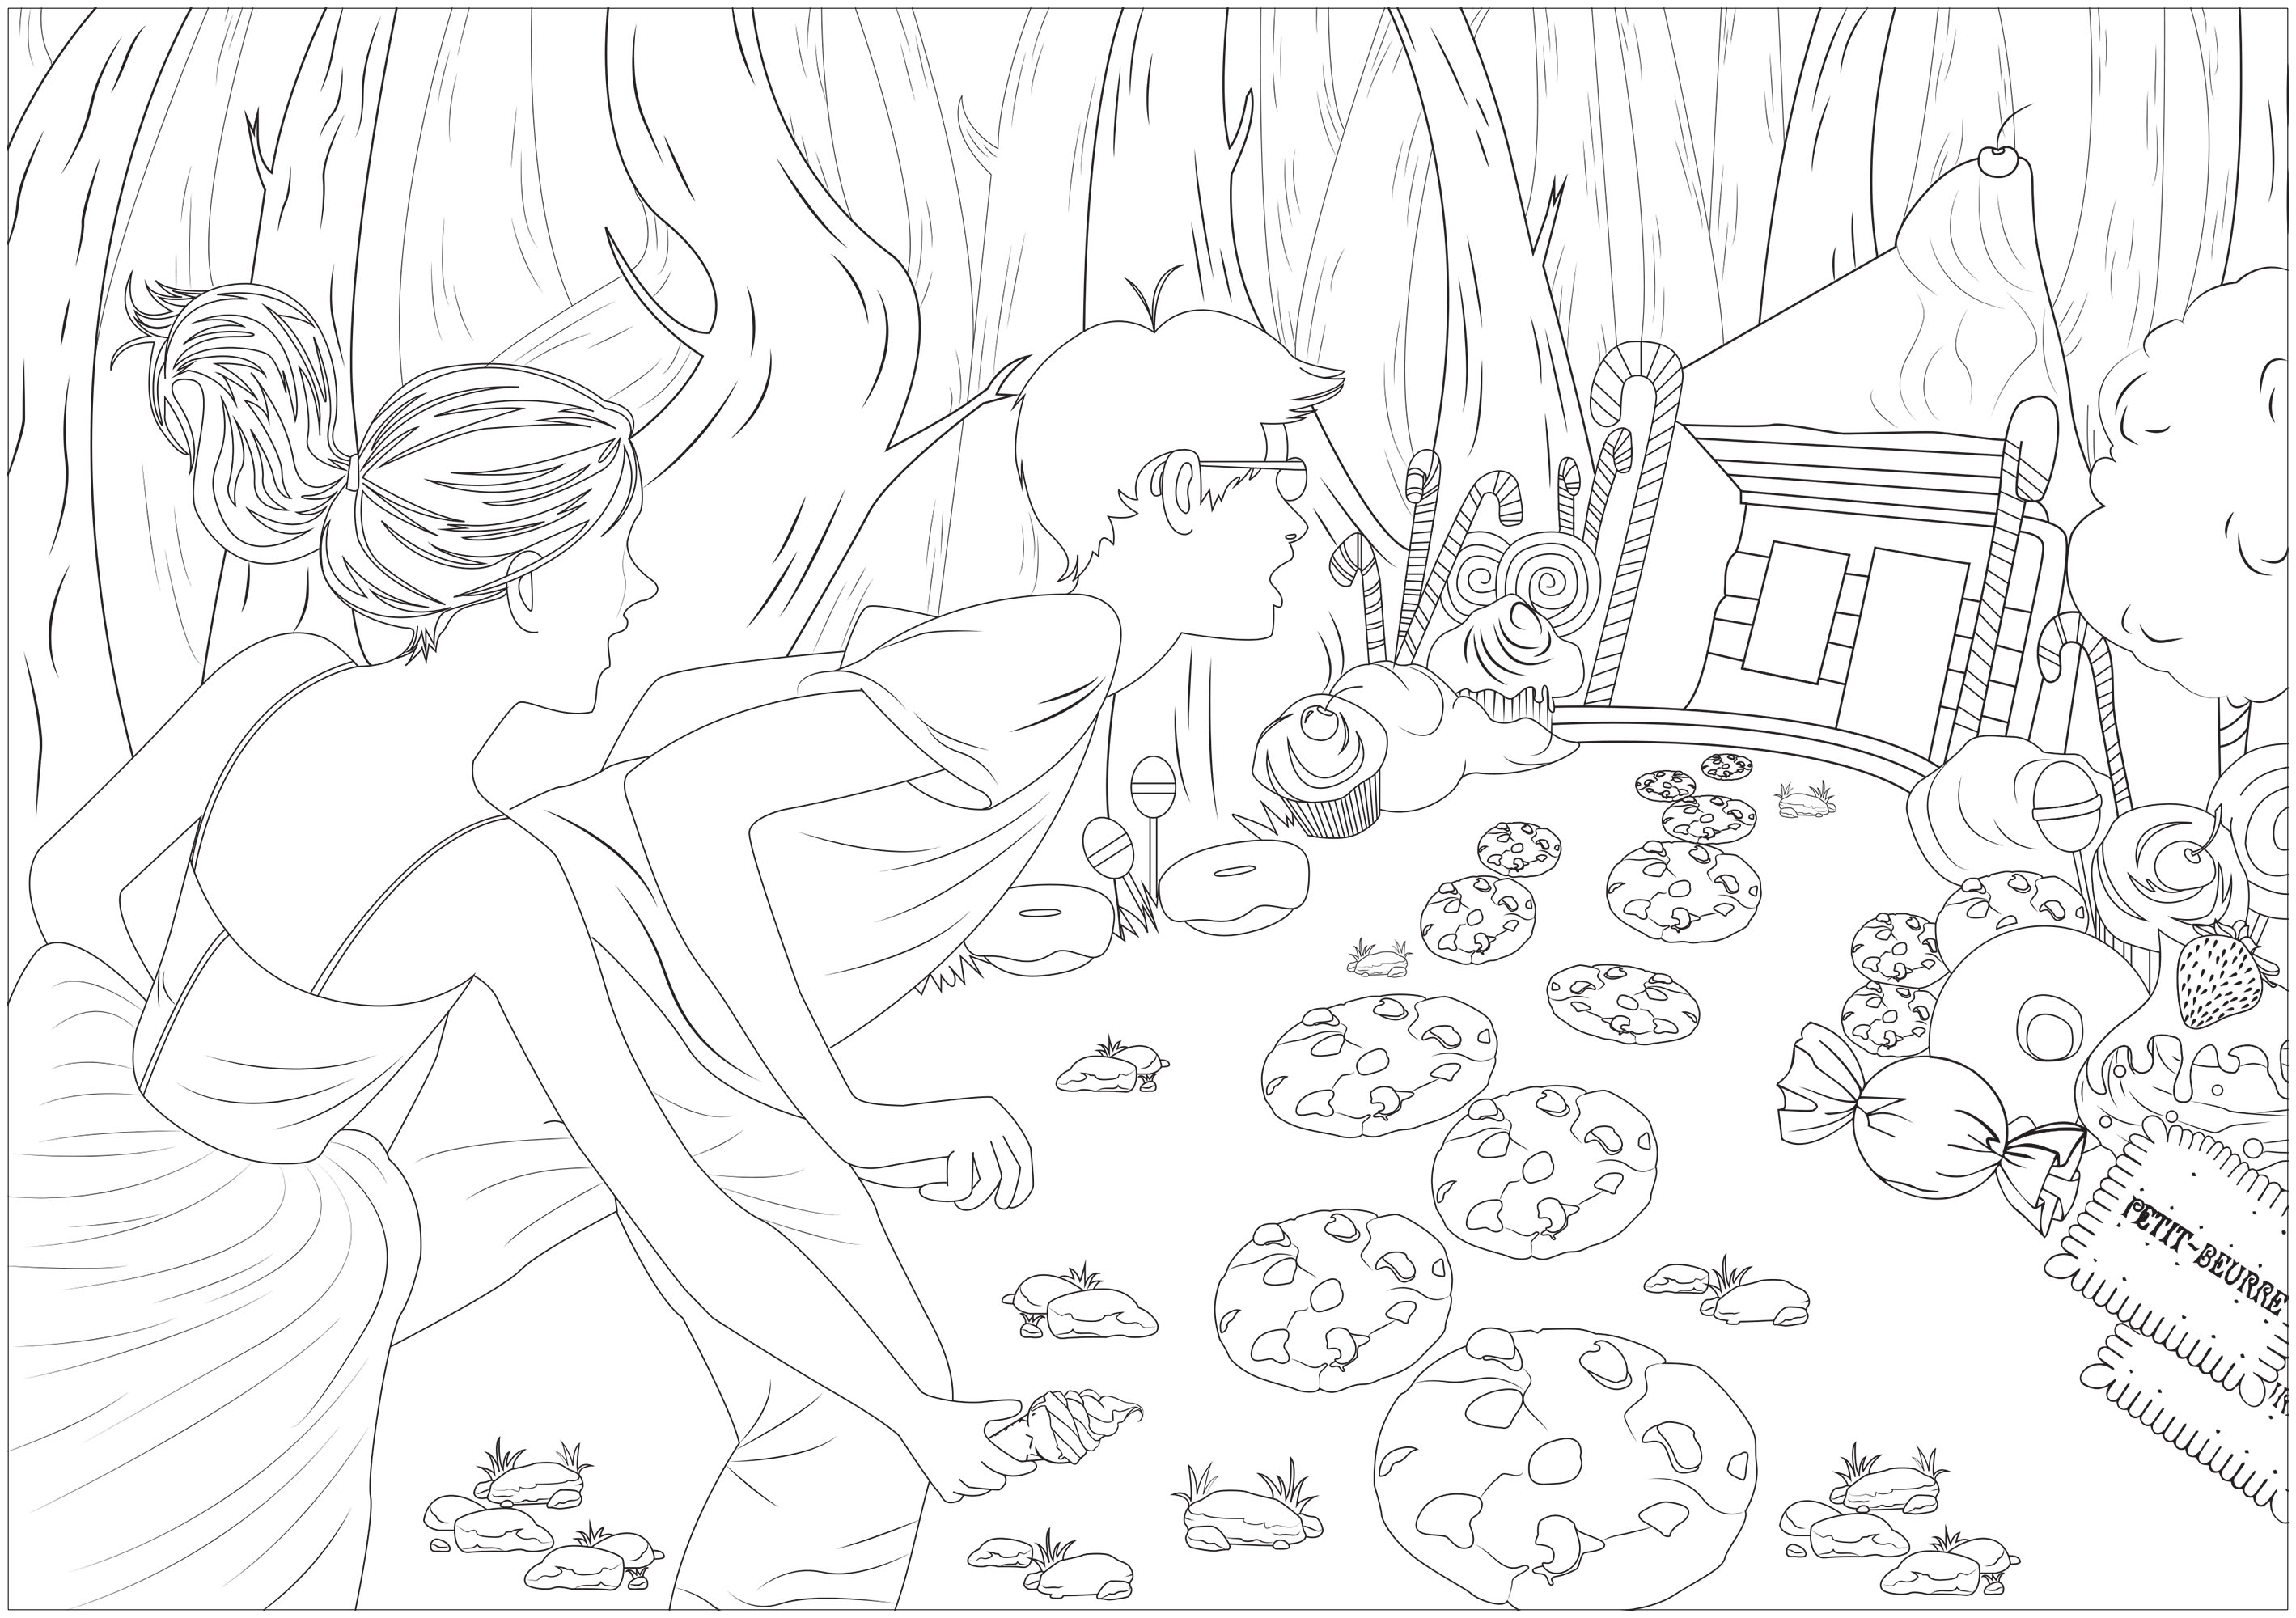 Ilustração inspirada em Hansel & Gretel, conto de fadas gravado pelos irmãos Grimm, Artista : Axelle